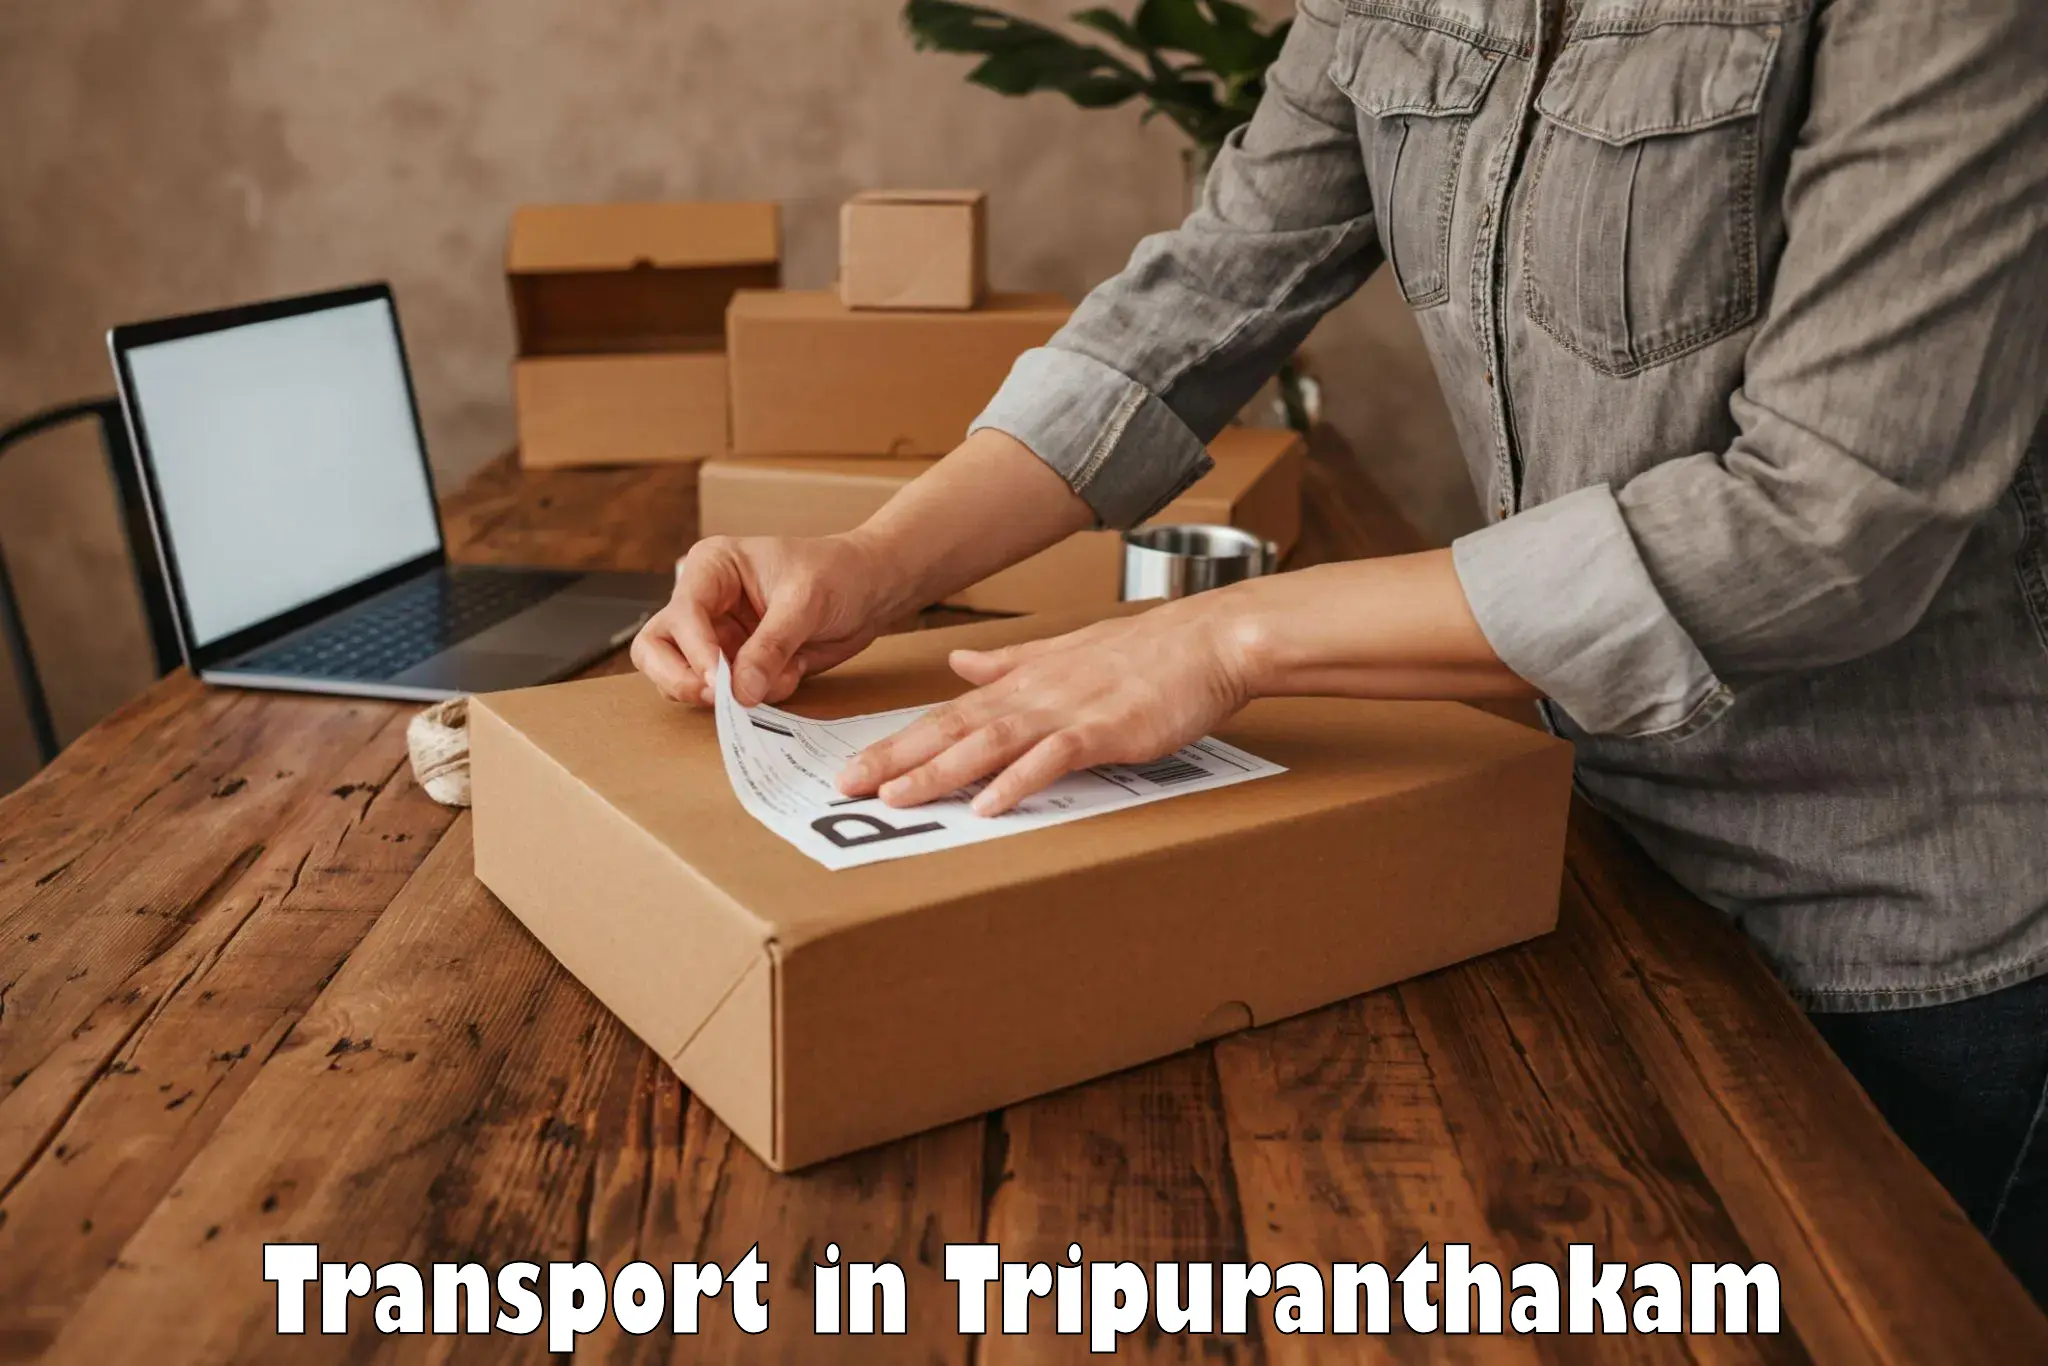 Online transport in Tripuranthakam